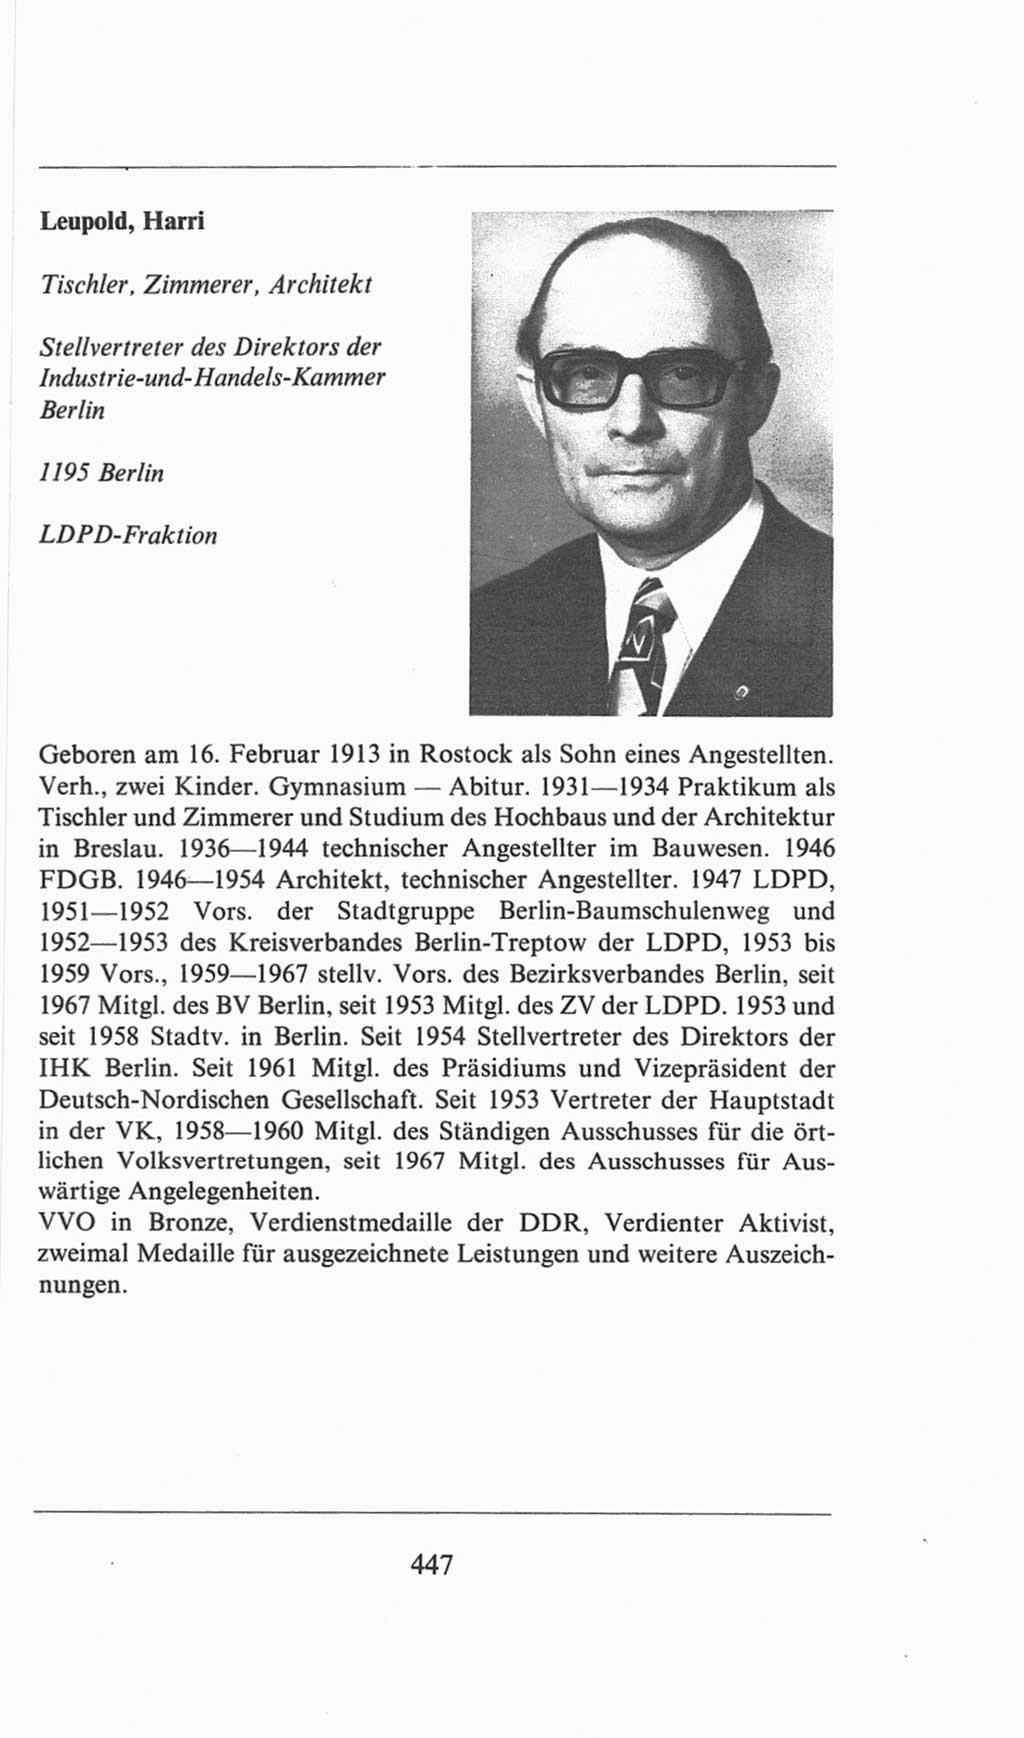 Volkskammer (VK) der Deutschen Demokratischen Republik (DDR), 6. Wahlperiode 1971-1976, Seite 447 (VK. DDR 6. WP. 1971-1976, S. 447)